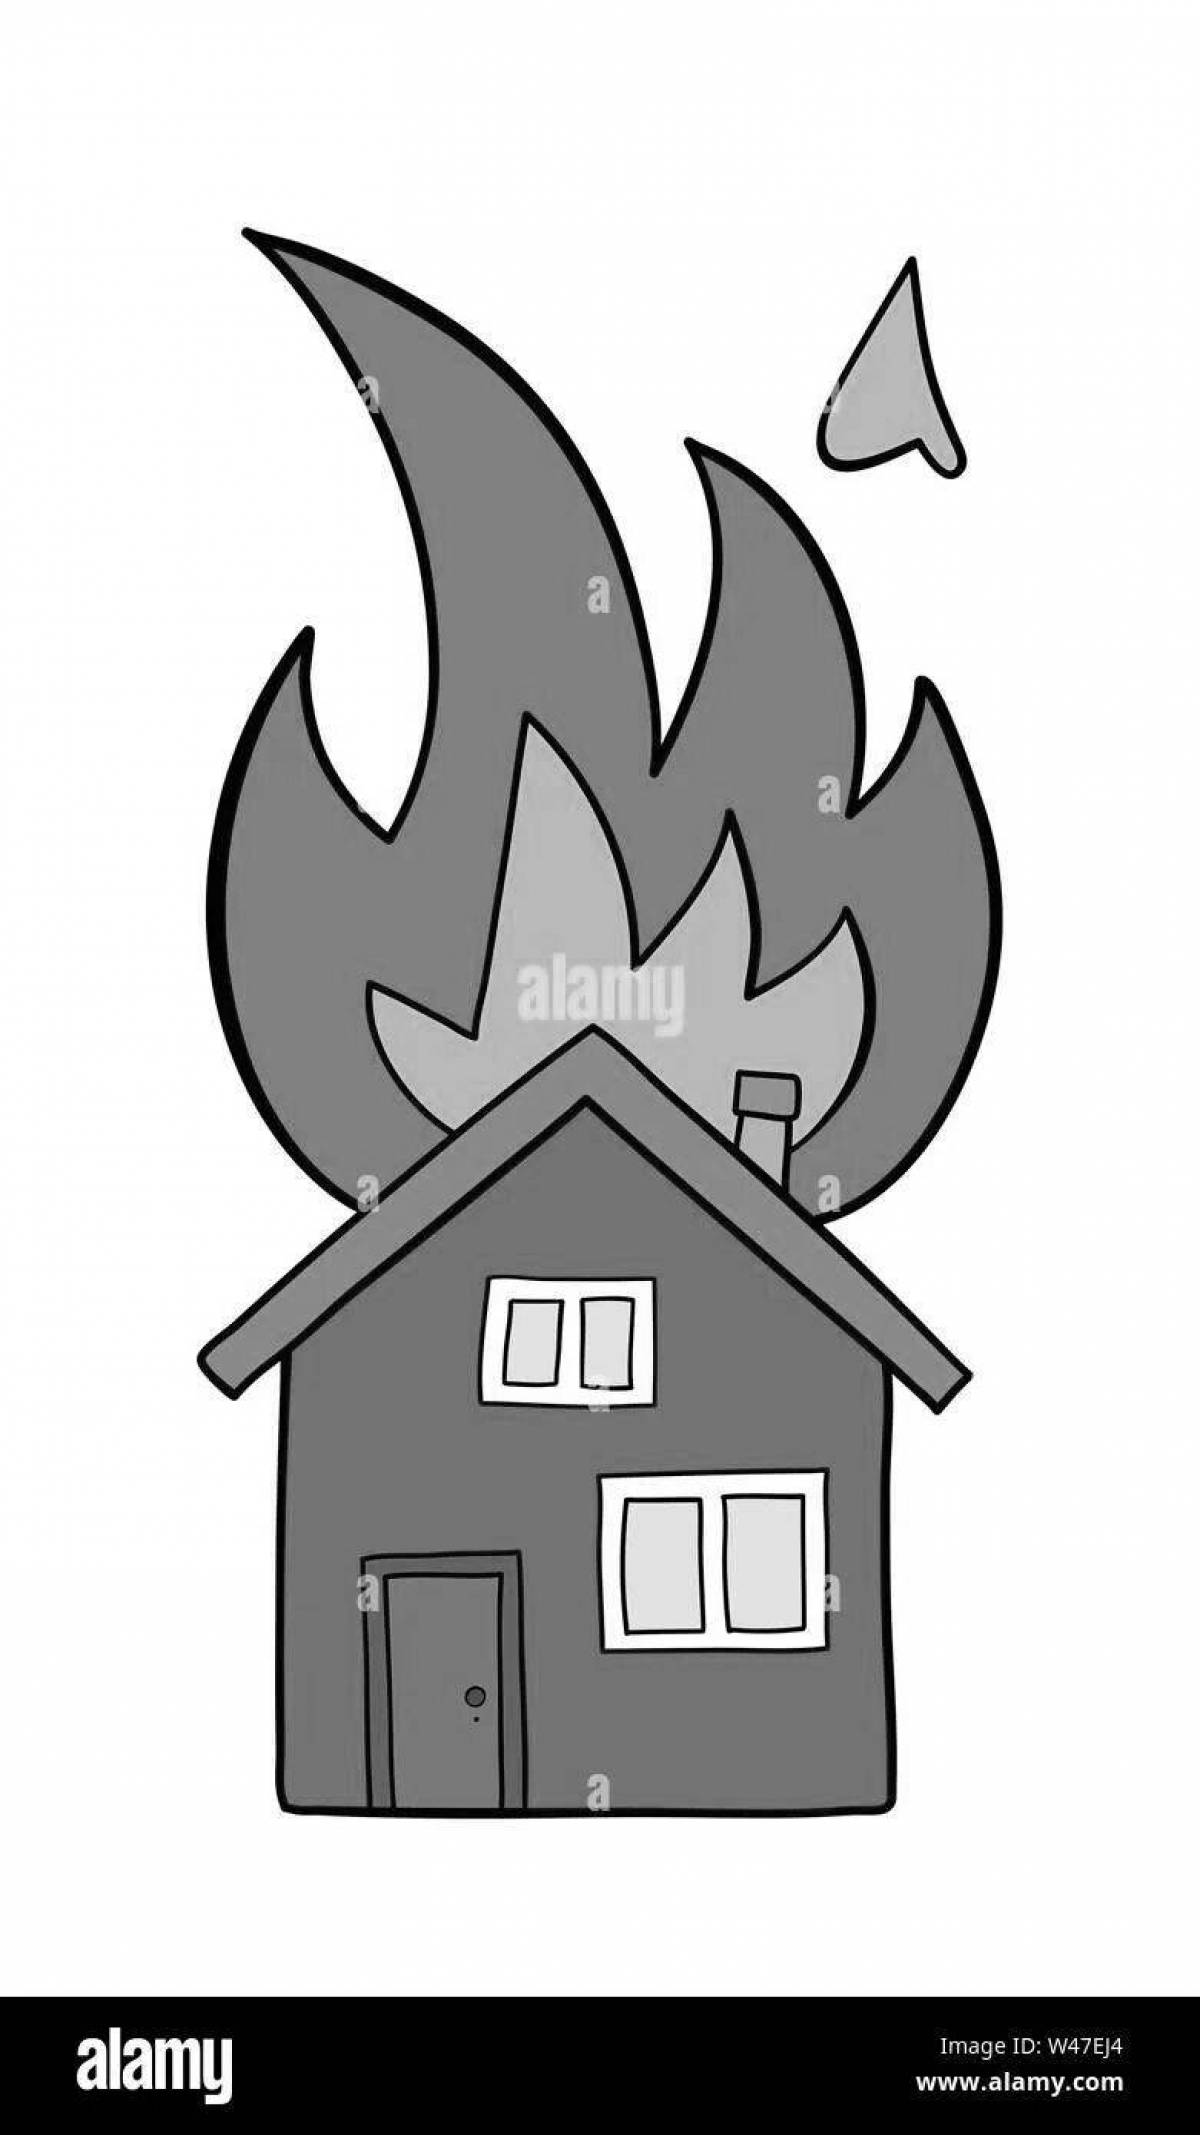 Интригующая раскраска горящий дом для детей